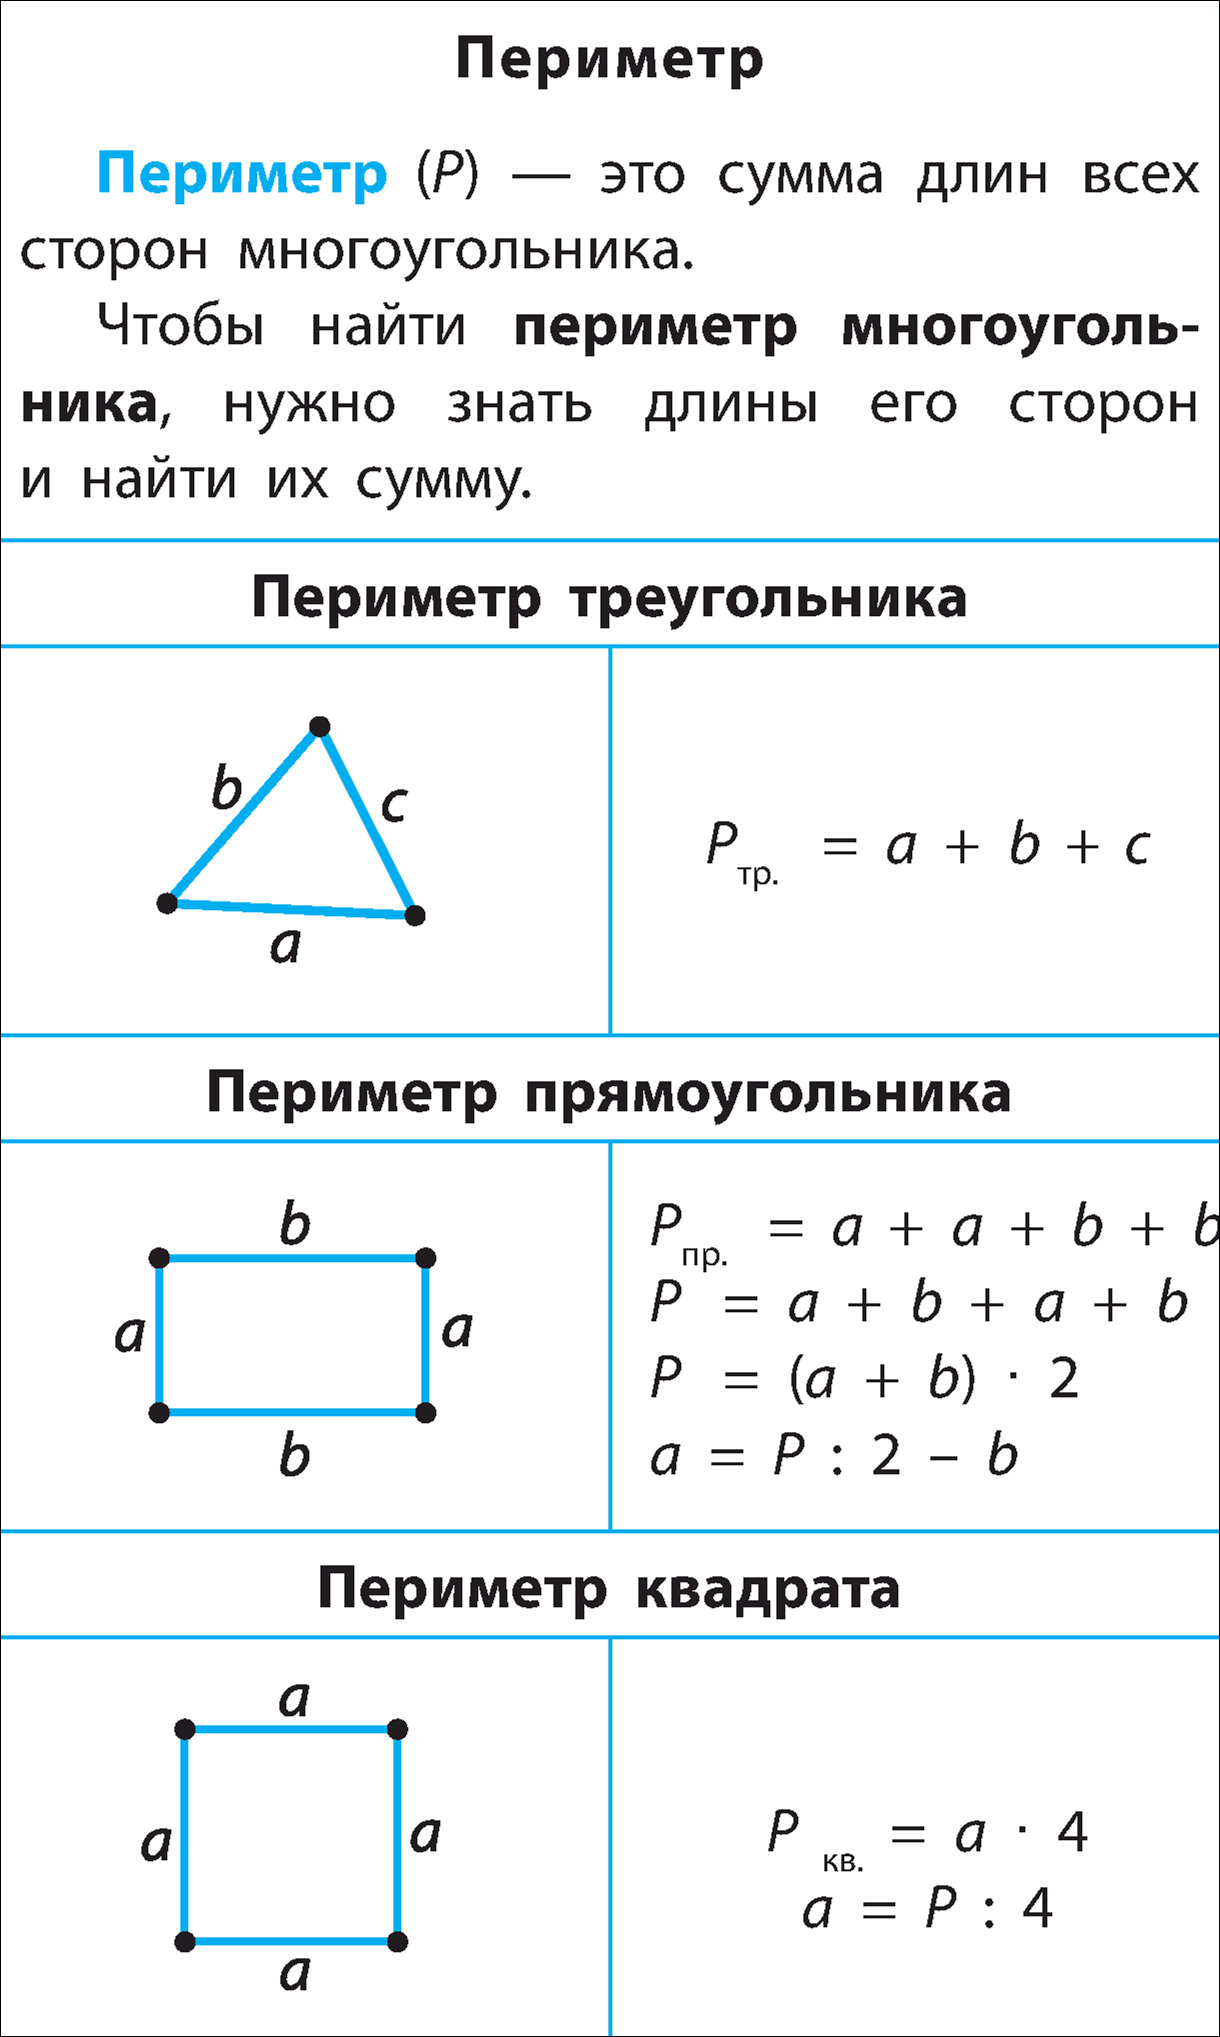 Математика 2 класс периметр прямоугольника школа россии. Периметр прямоугольника квадрата треугольника формулы. Формула нахождения периметра треугольника и квадрата 3 класс. Формула нахождения периметра квадрата и прямоугольника 3 класс. Формула периметра квадрата 3 класс математика.